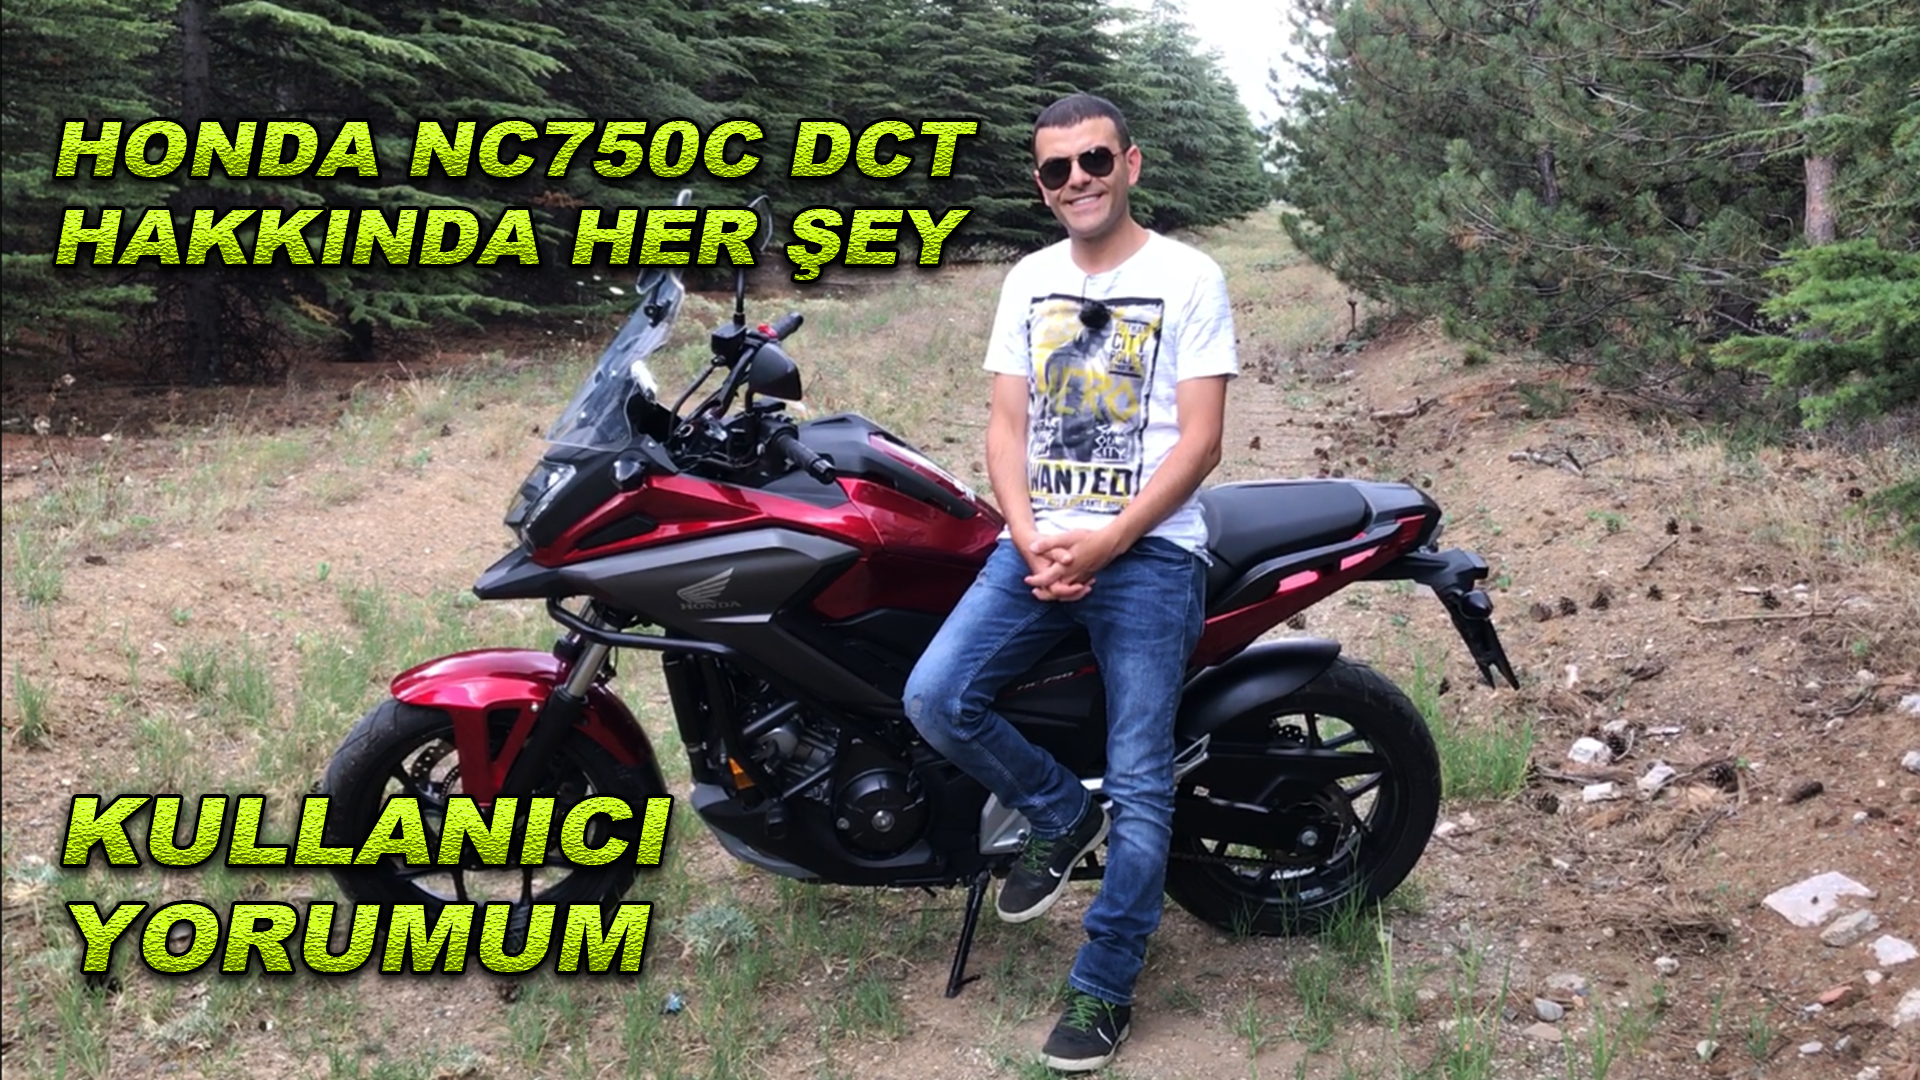 Honda NC 750x dct hakkında Her şey | Kendi motorum kullanıcı yorumum (SATTIM)